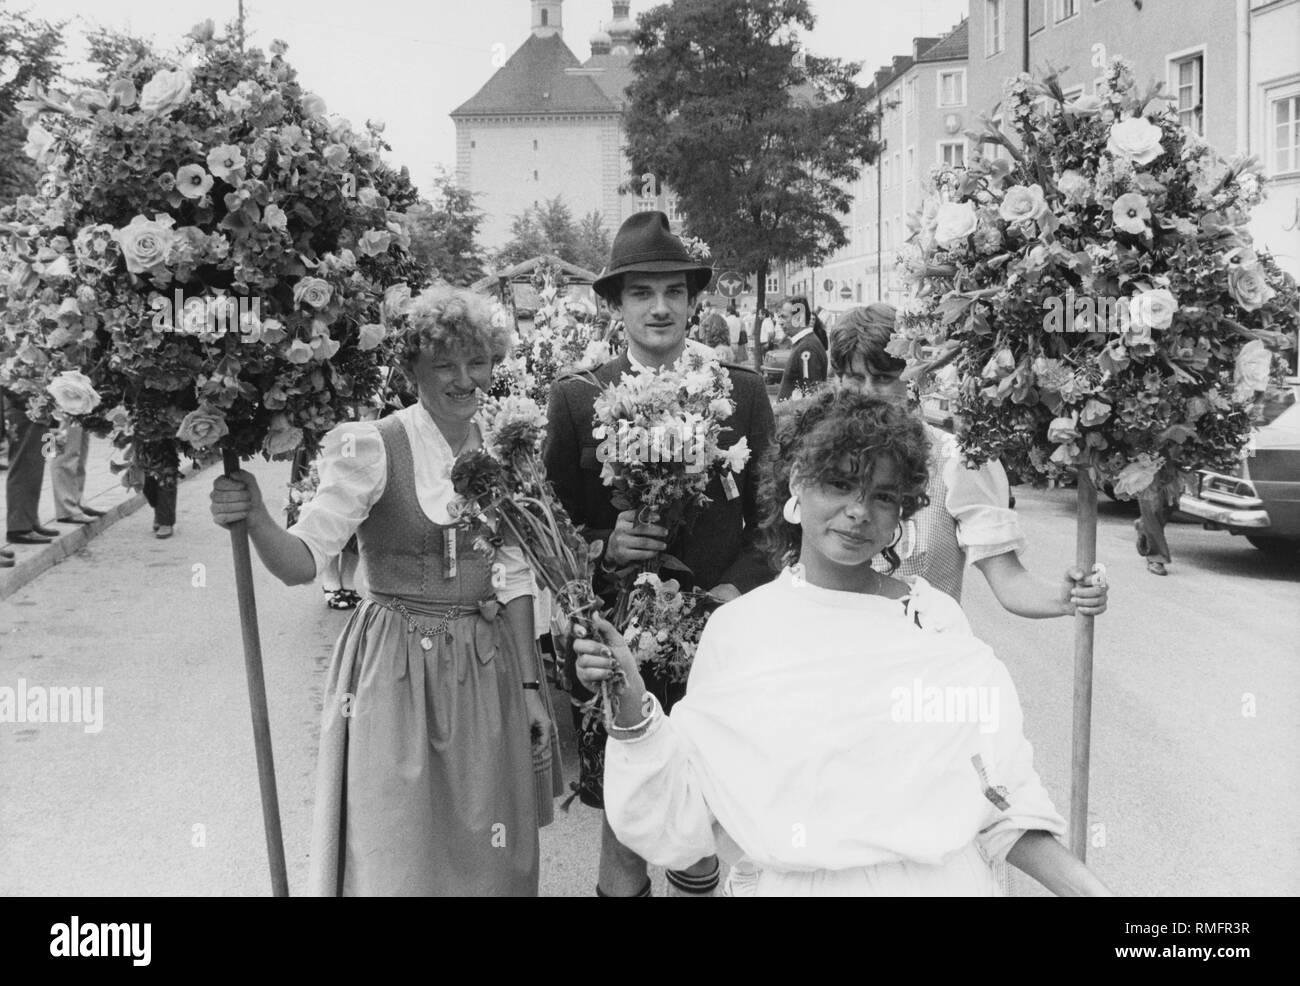 Gärtner zeigen Blütenpracht während der jährlichen Parade durch das Zentrum von München anlässlich des Tages des Gärtner und der 116. Jahrestag der München Gärtner Association. Stockfoto